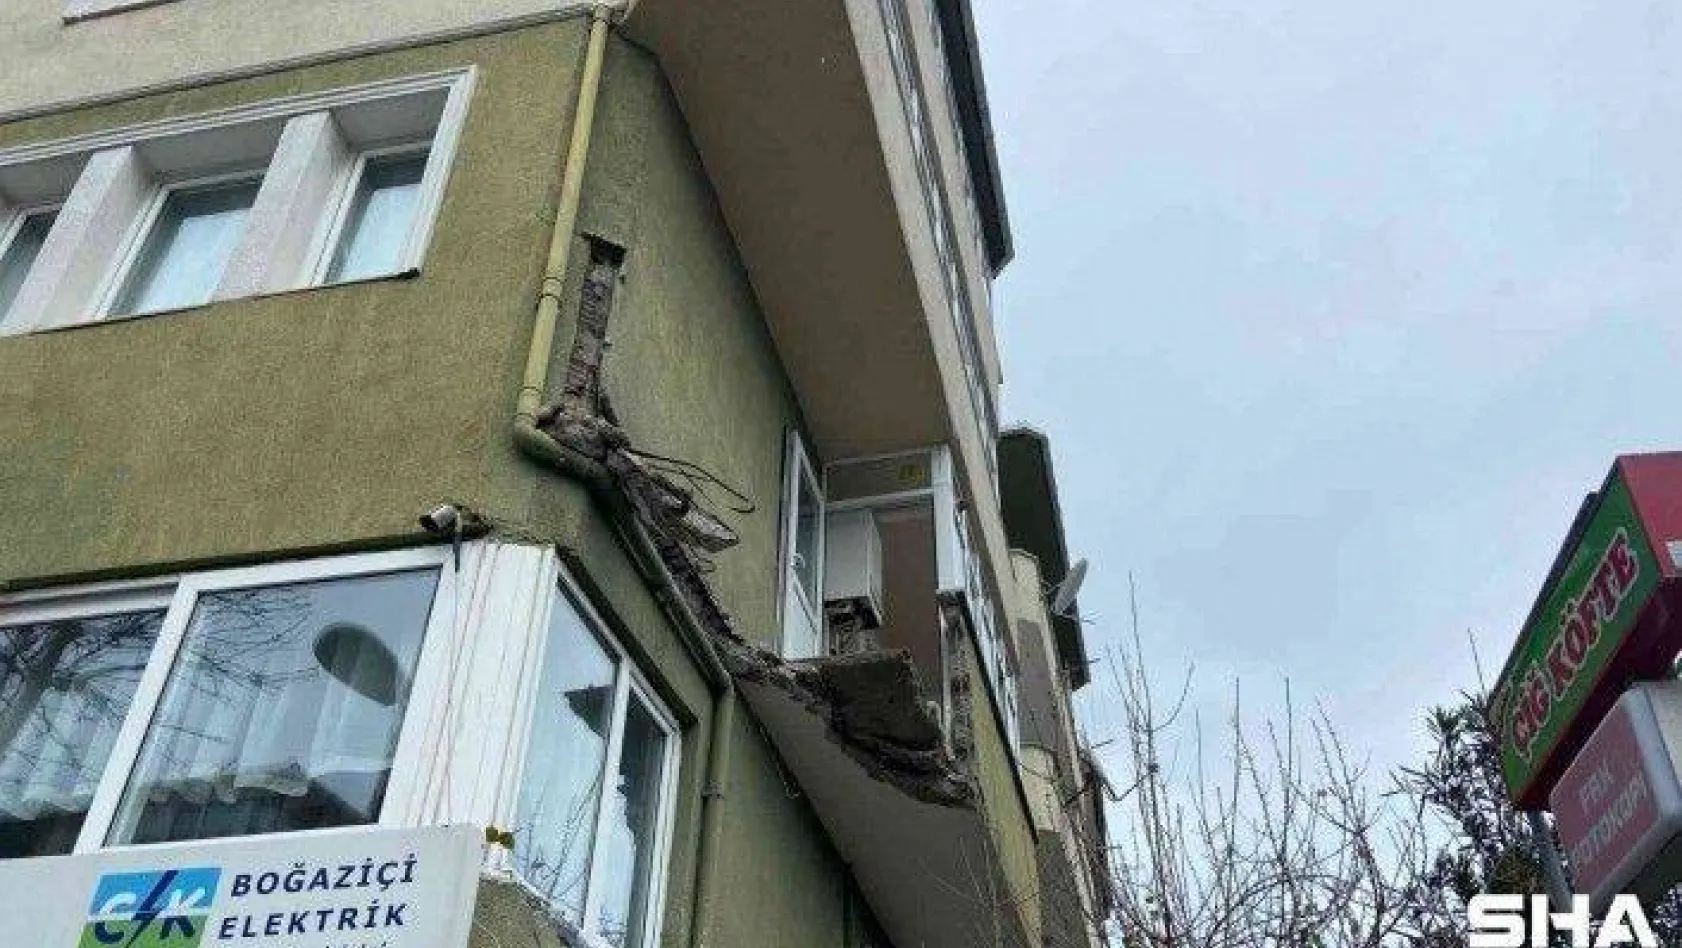 Ambarlı'da binan balkonu çöktü 1 yaralı